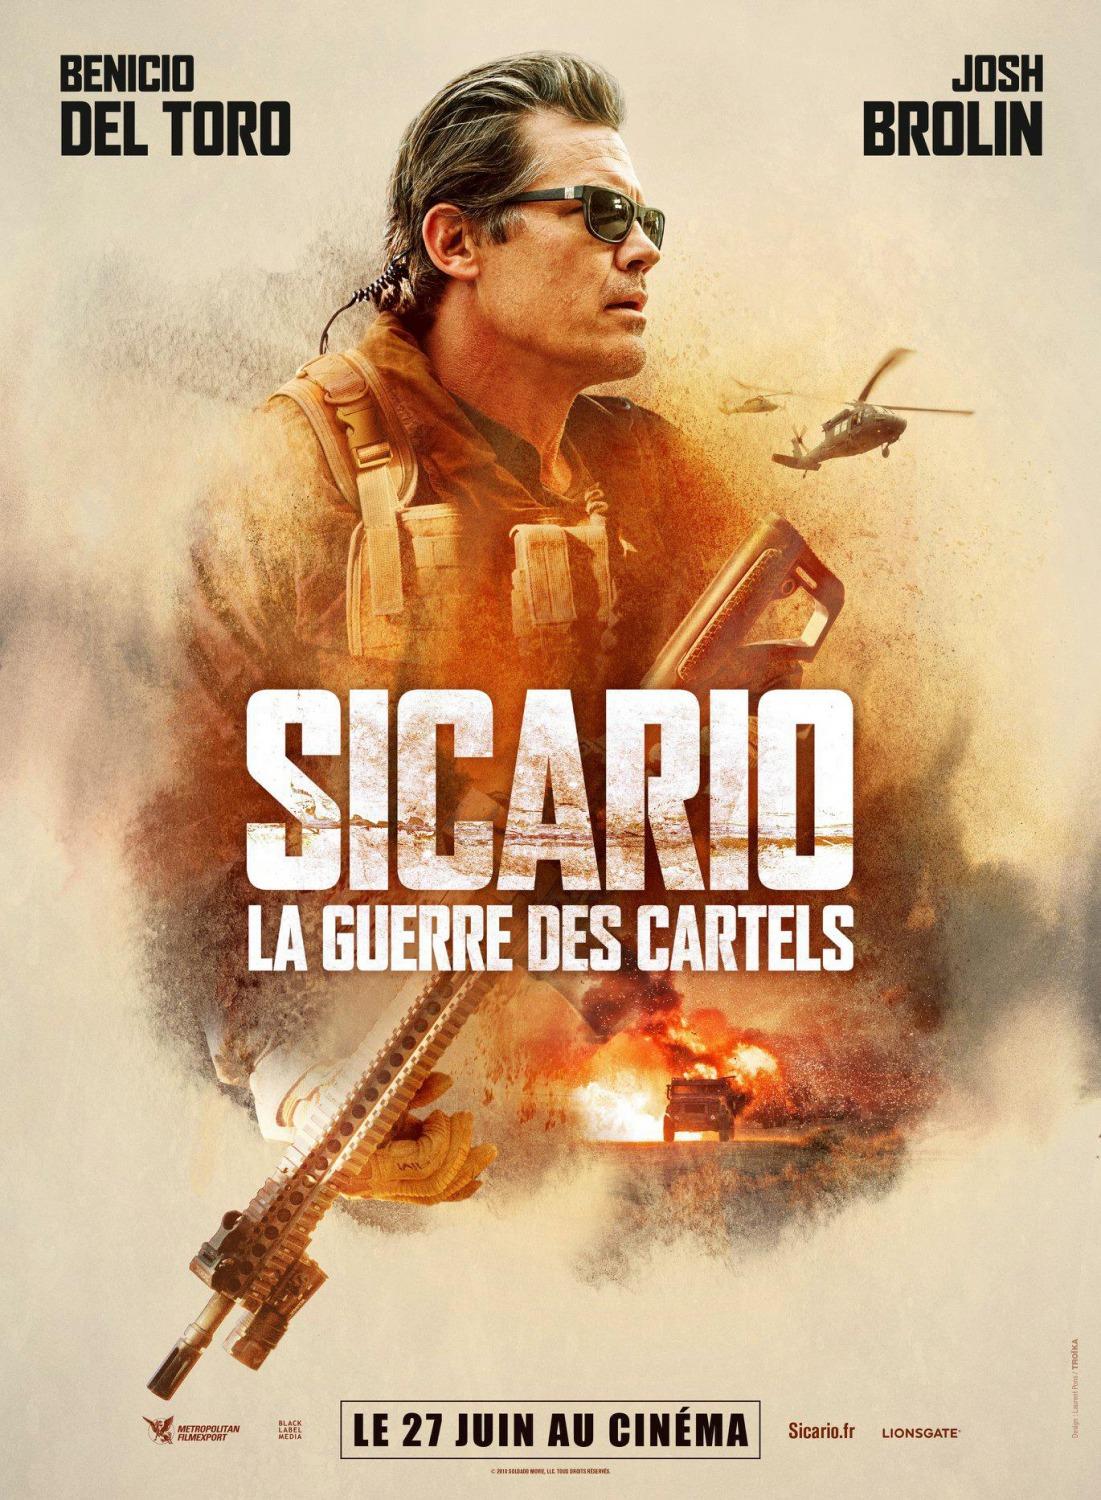 Постер фильма Убийца 2: Против всех | Sicario 2: Soldado 